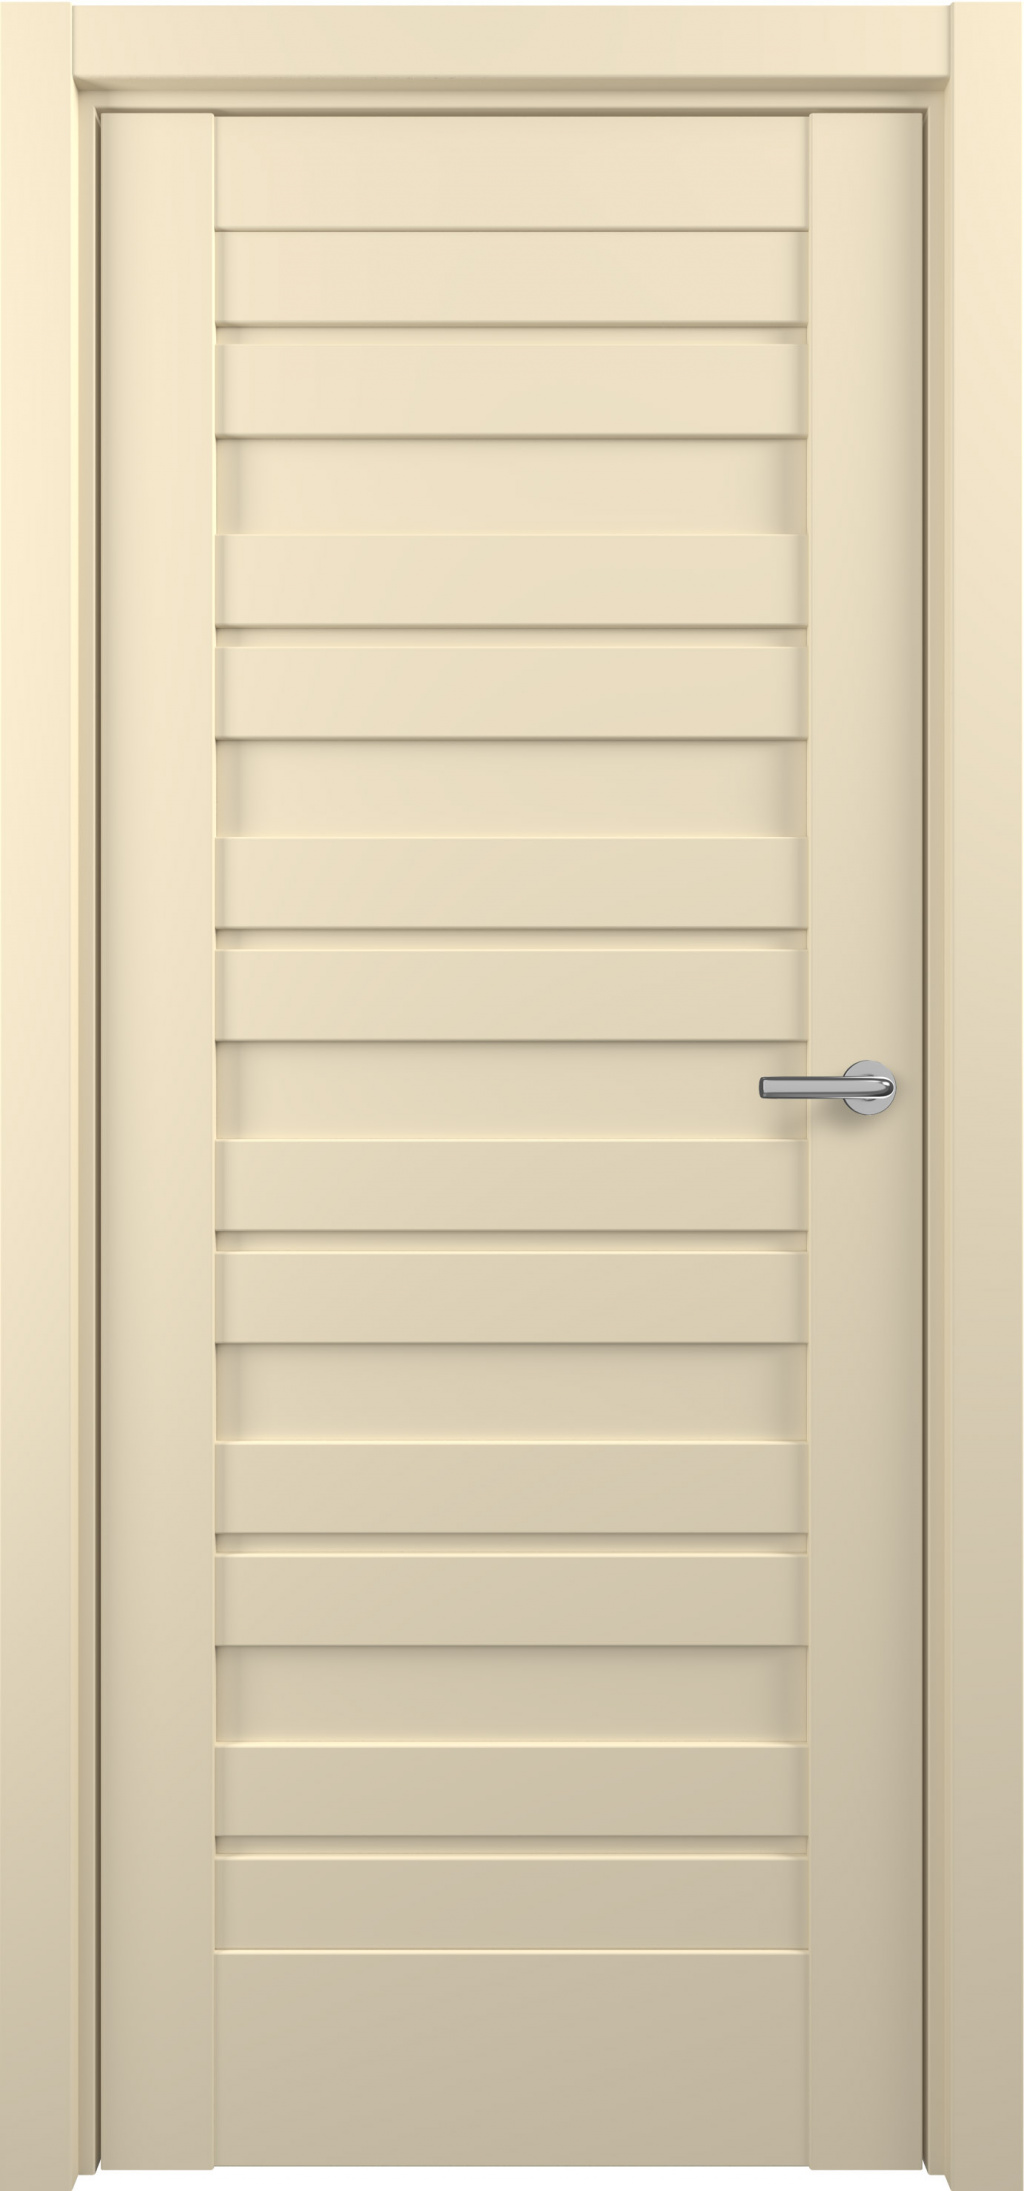 Zadoor Межкомнатная дверь S16, арт. 15823 - фото №1